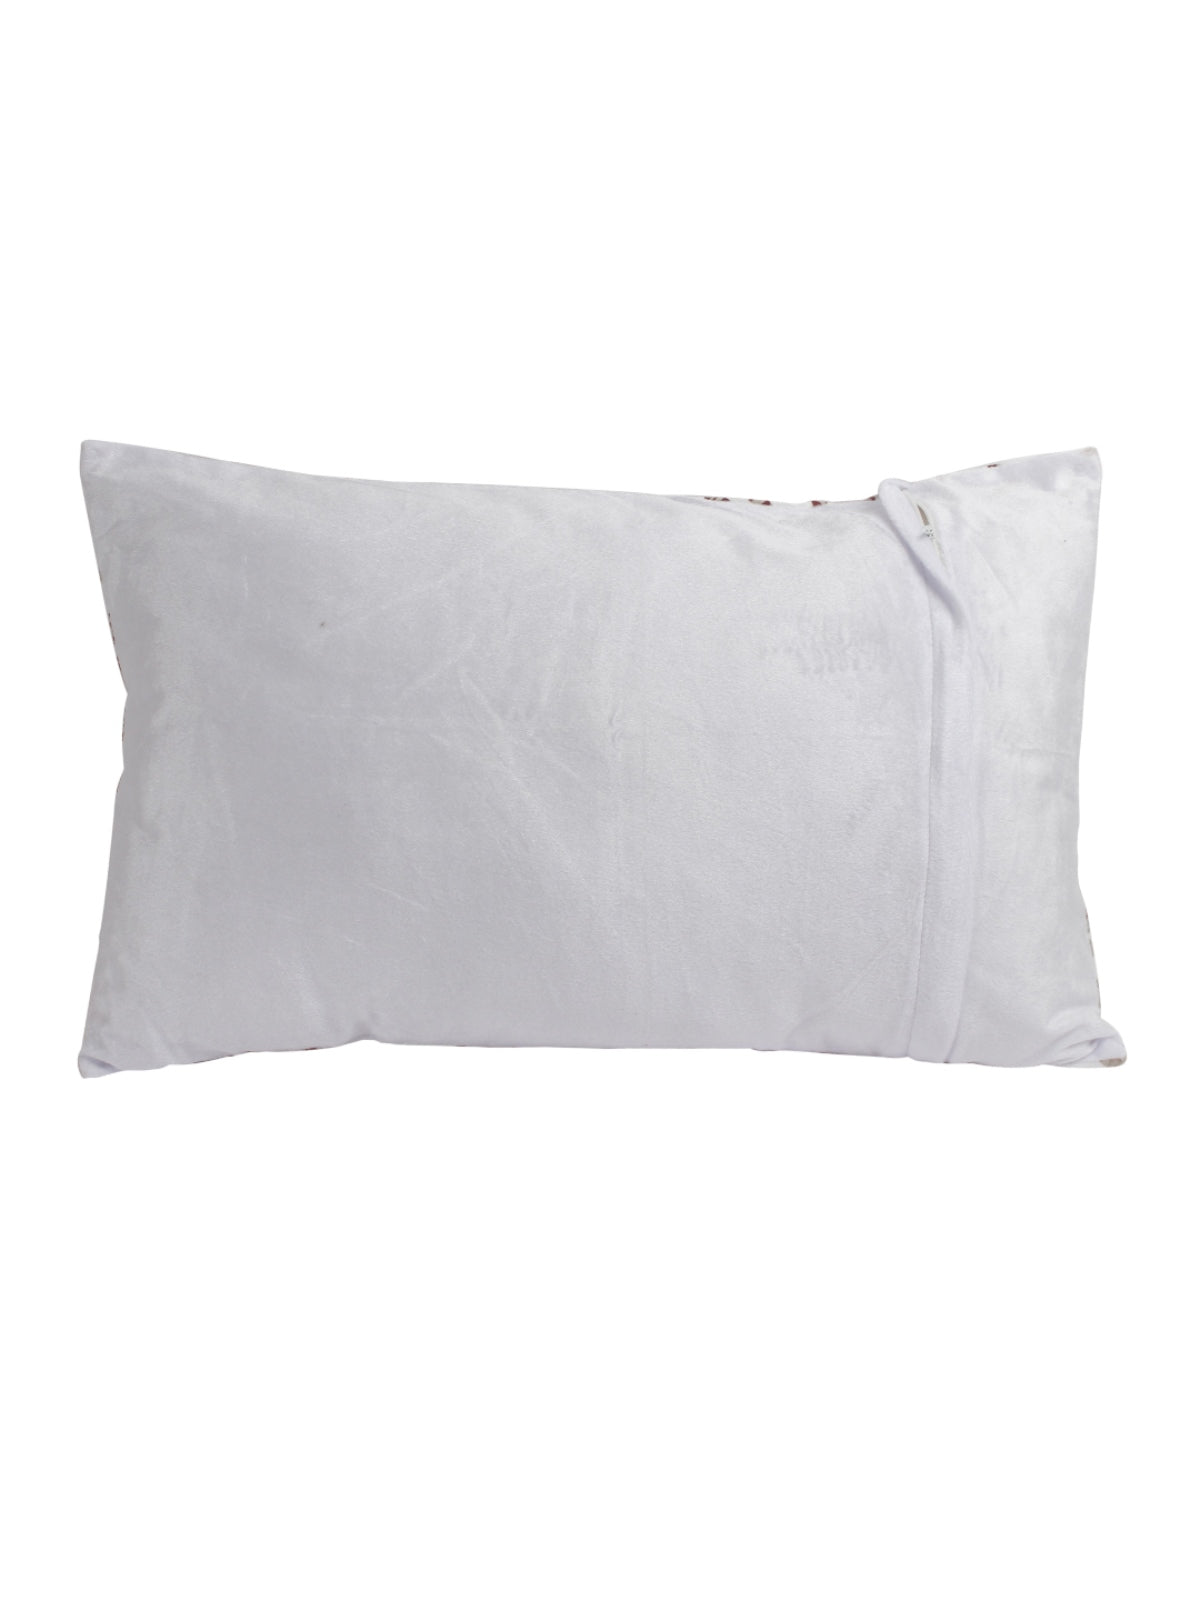 Off White & Grey Polyester Velvet Pillow Covers - Pack of 2